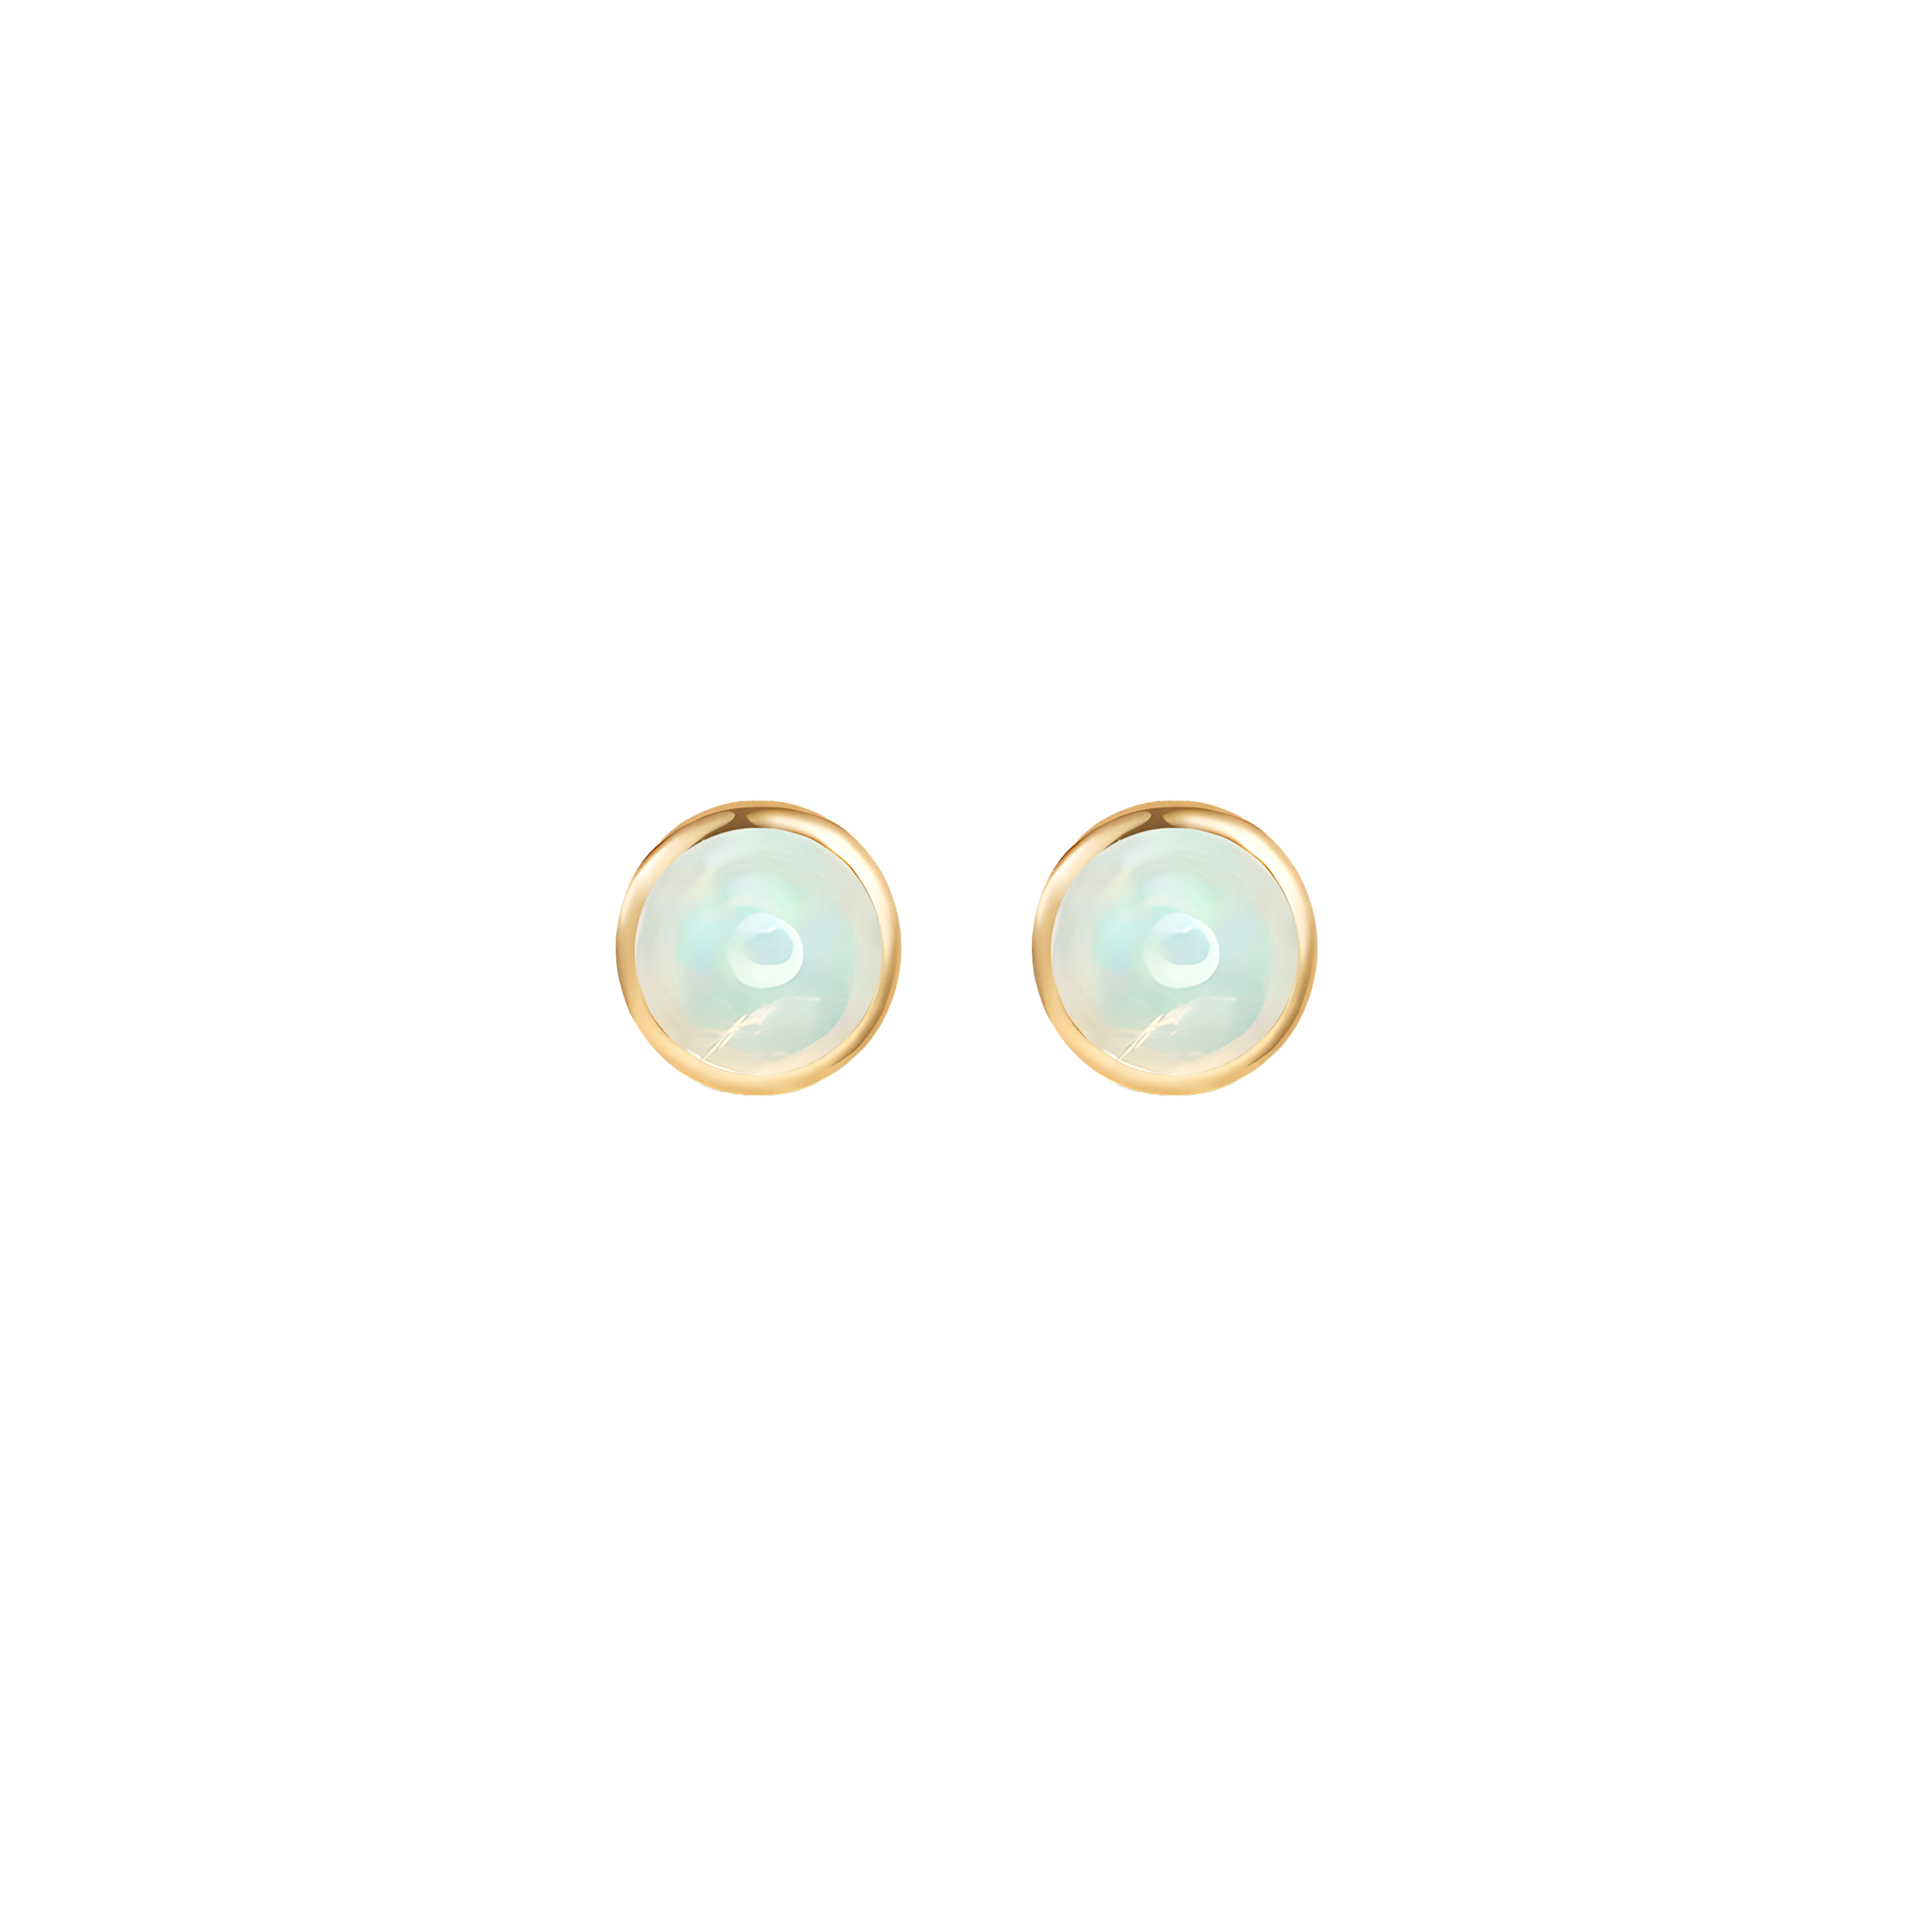 Opal Solid Bezel Set Earrings in 18k Yellow Gold